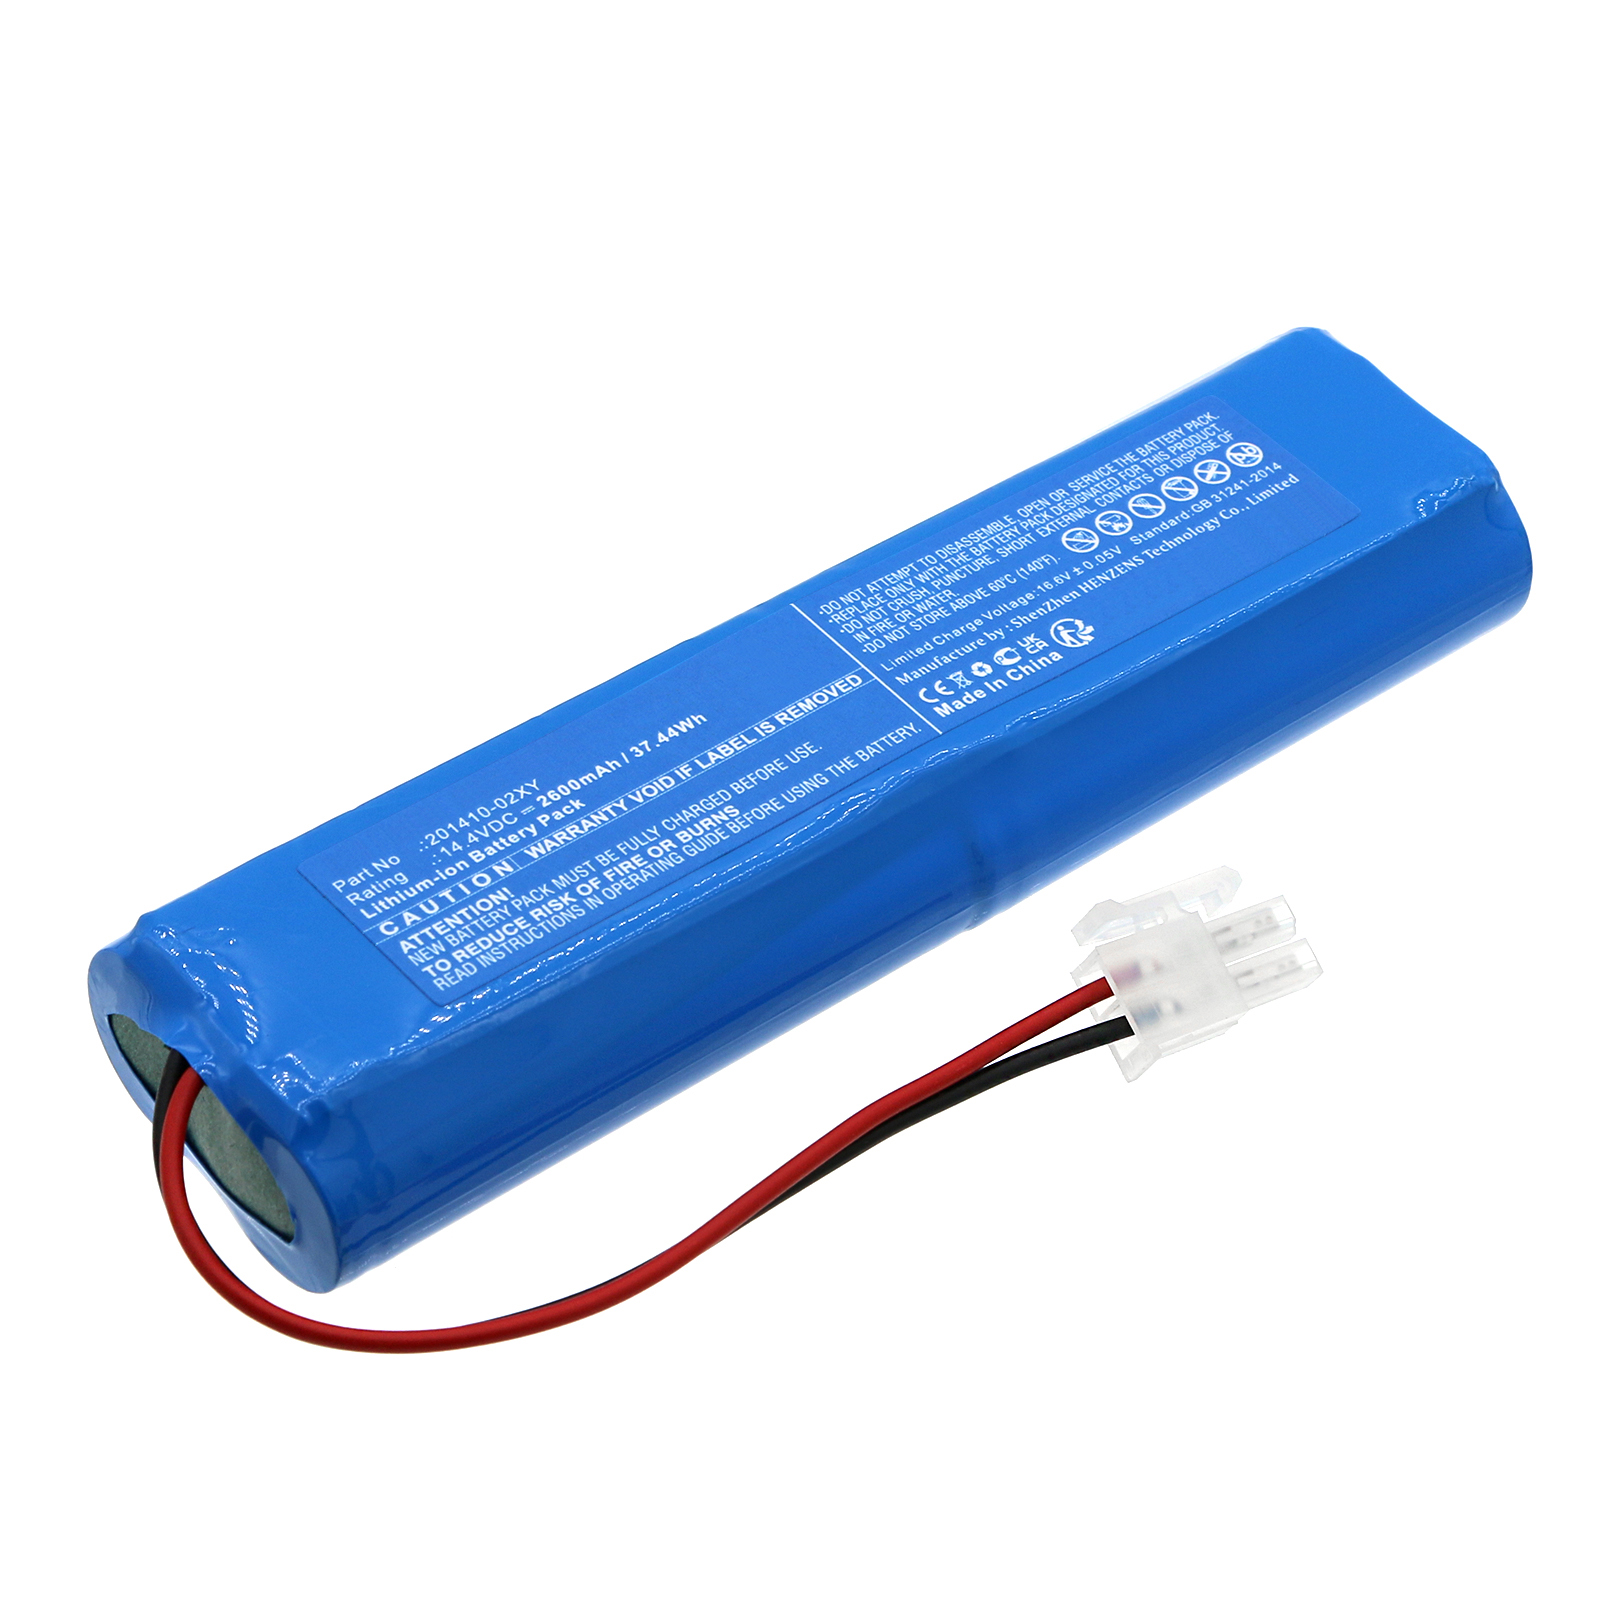 Synergy Digital Vacuum Cleaner Battery, Compatible with CECOTEC 201410-02XY Vacuum Cleaner Battery (Li-ion, 14.4V, 2600mAh)